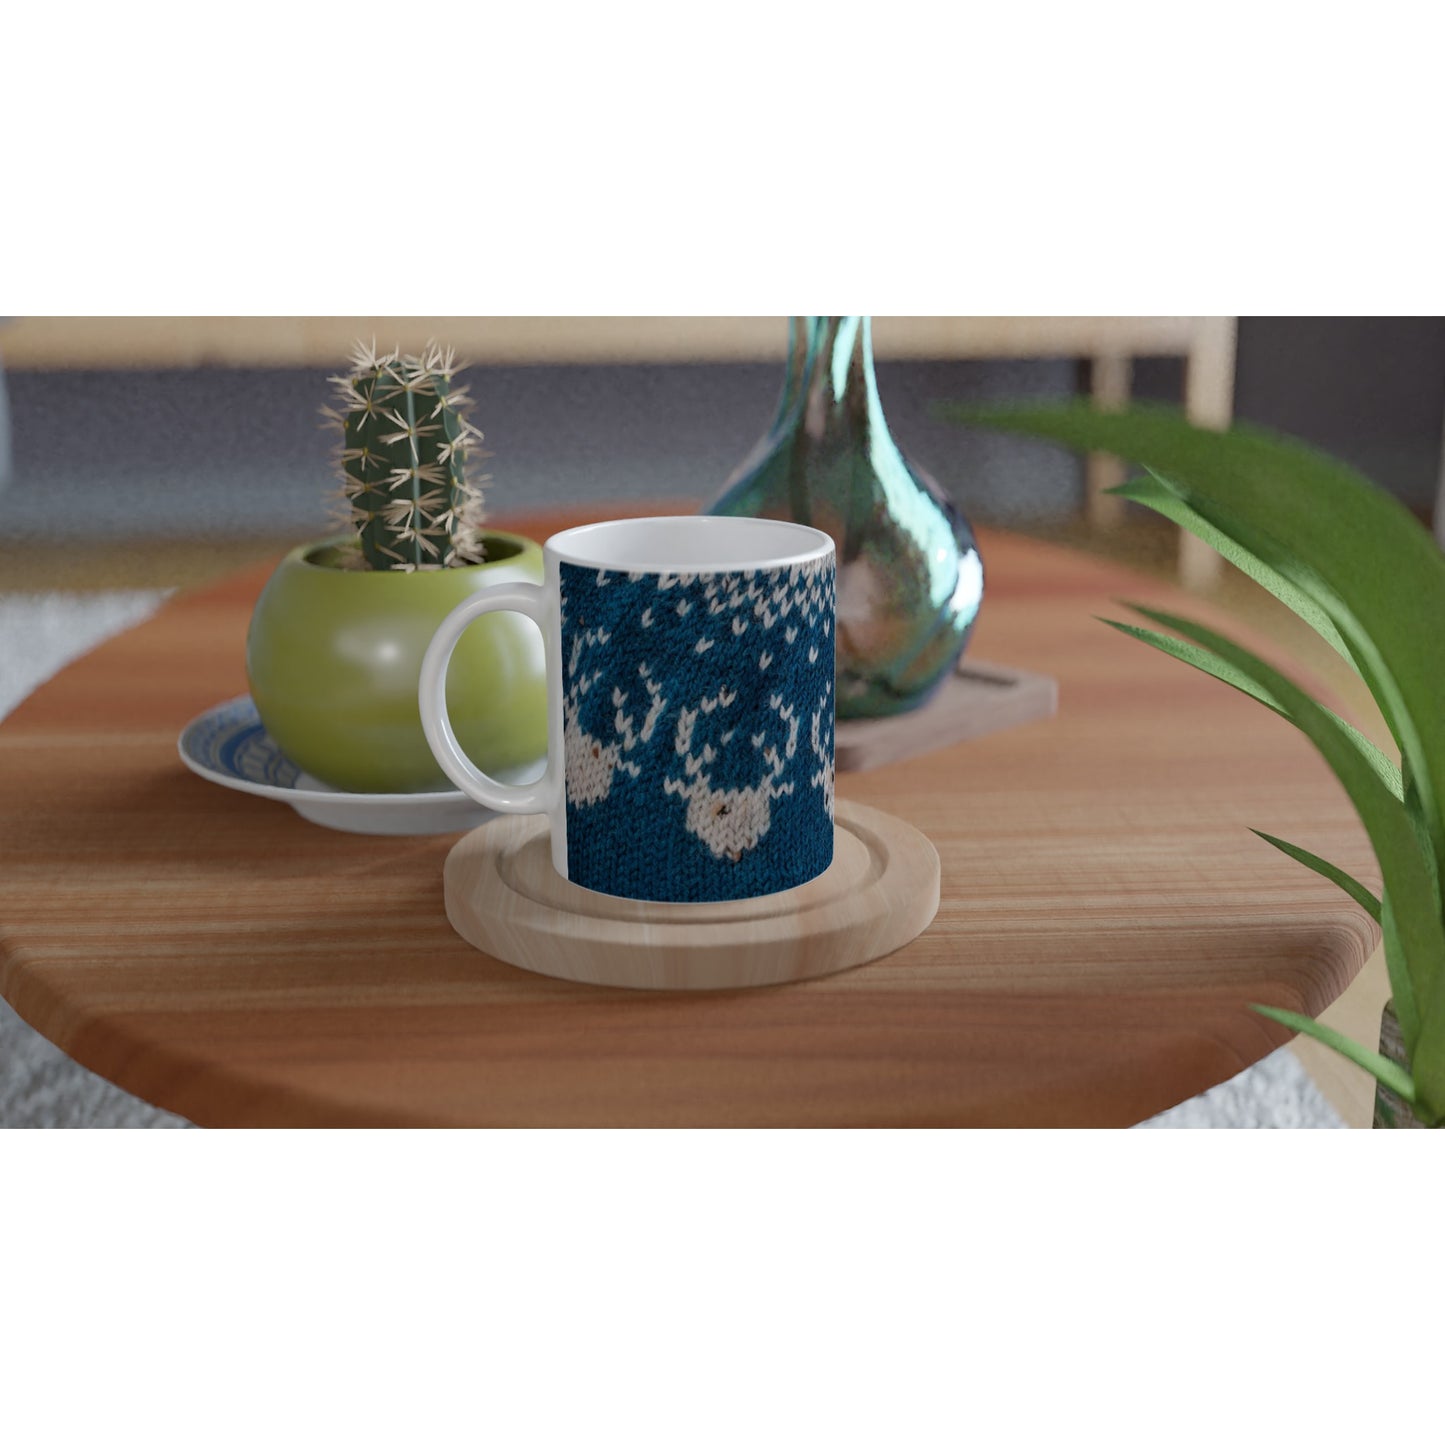 Mug with Icelandic knit pattern - Reindeer